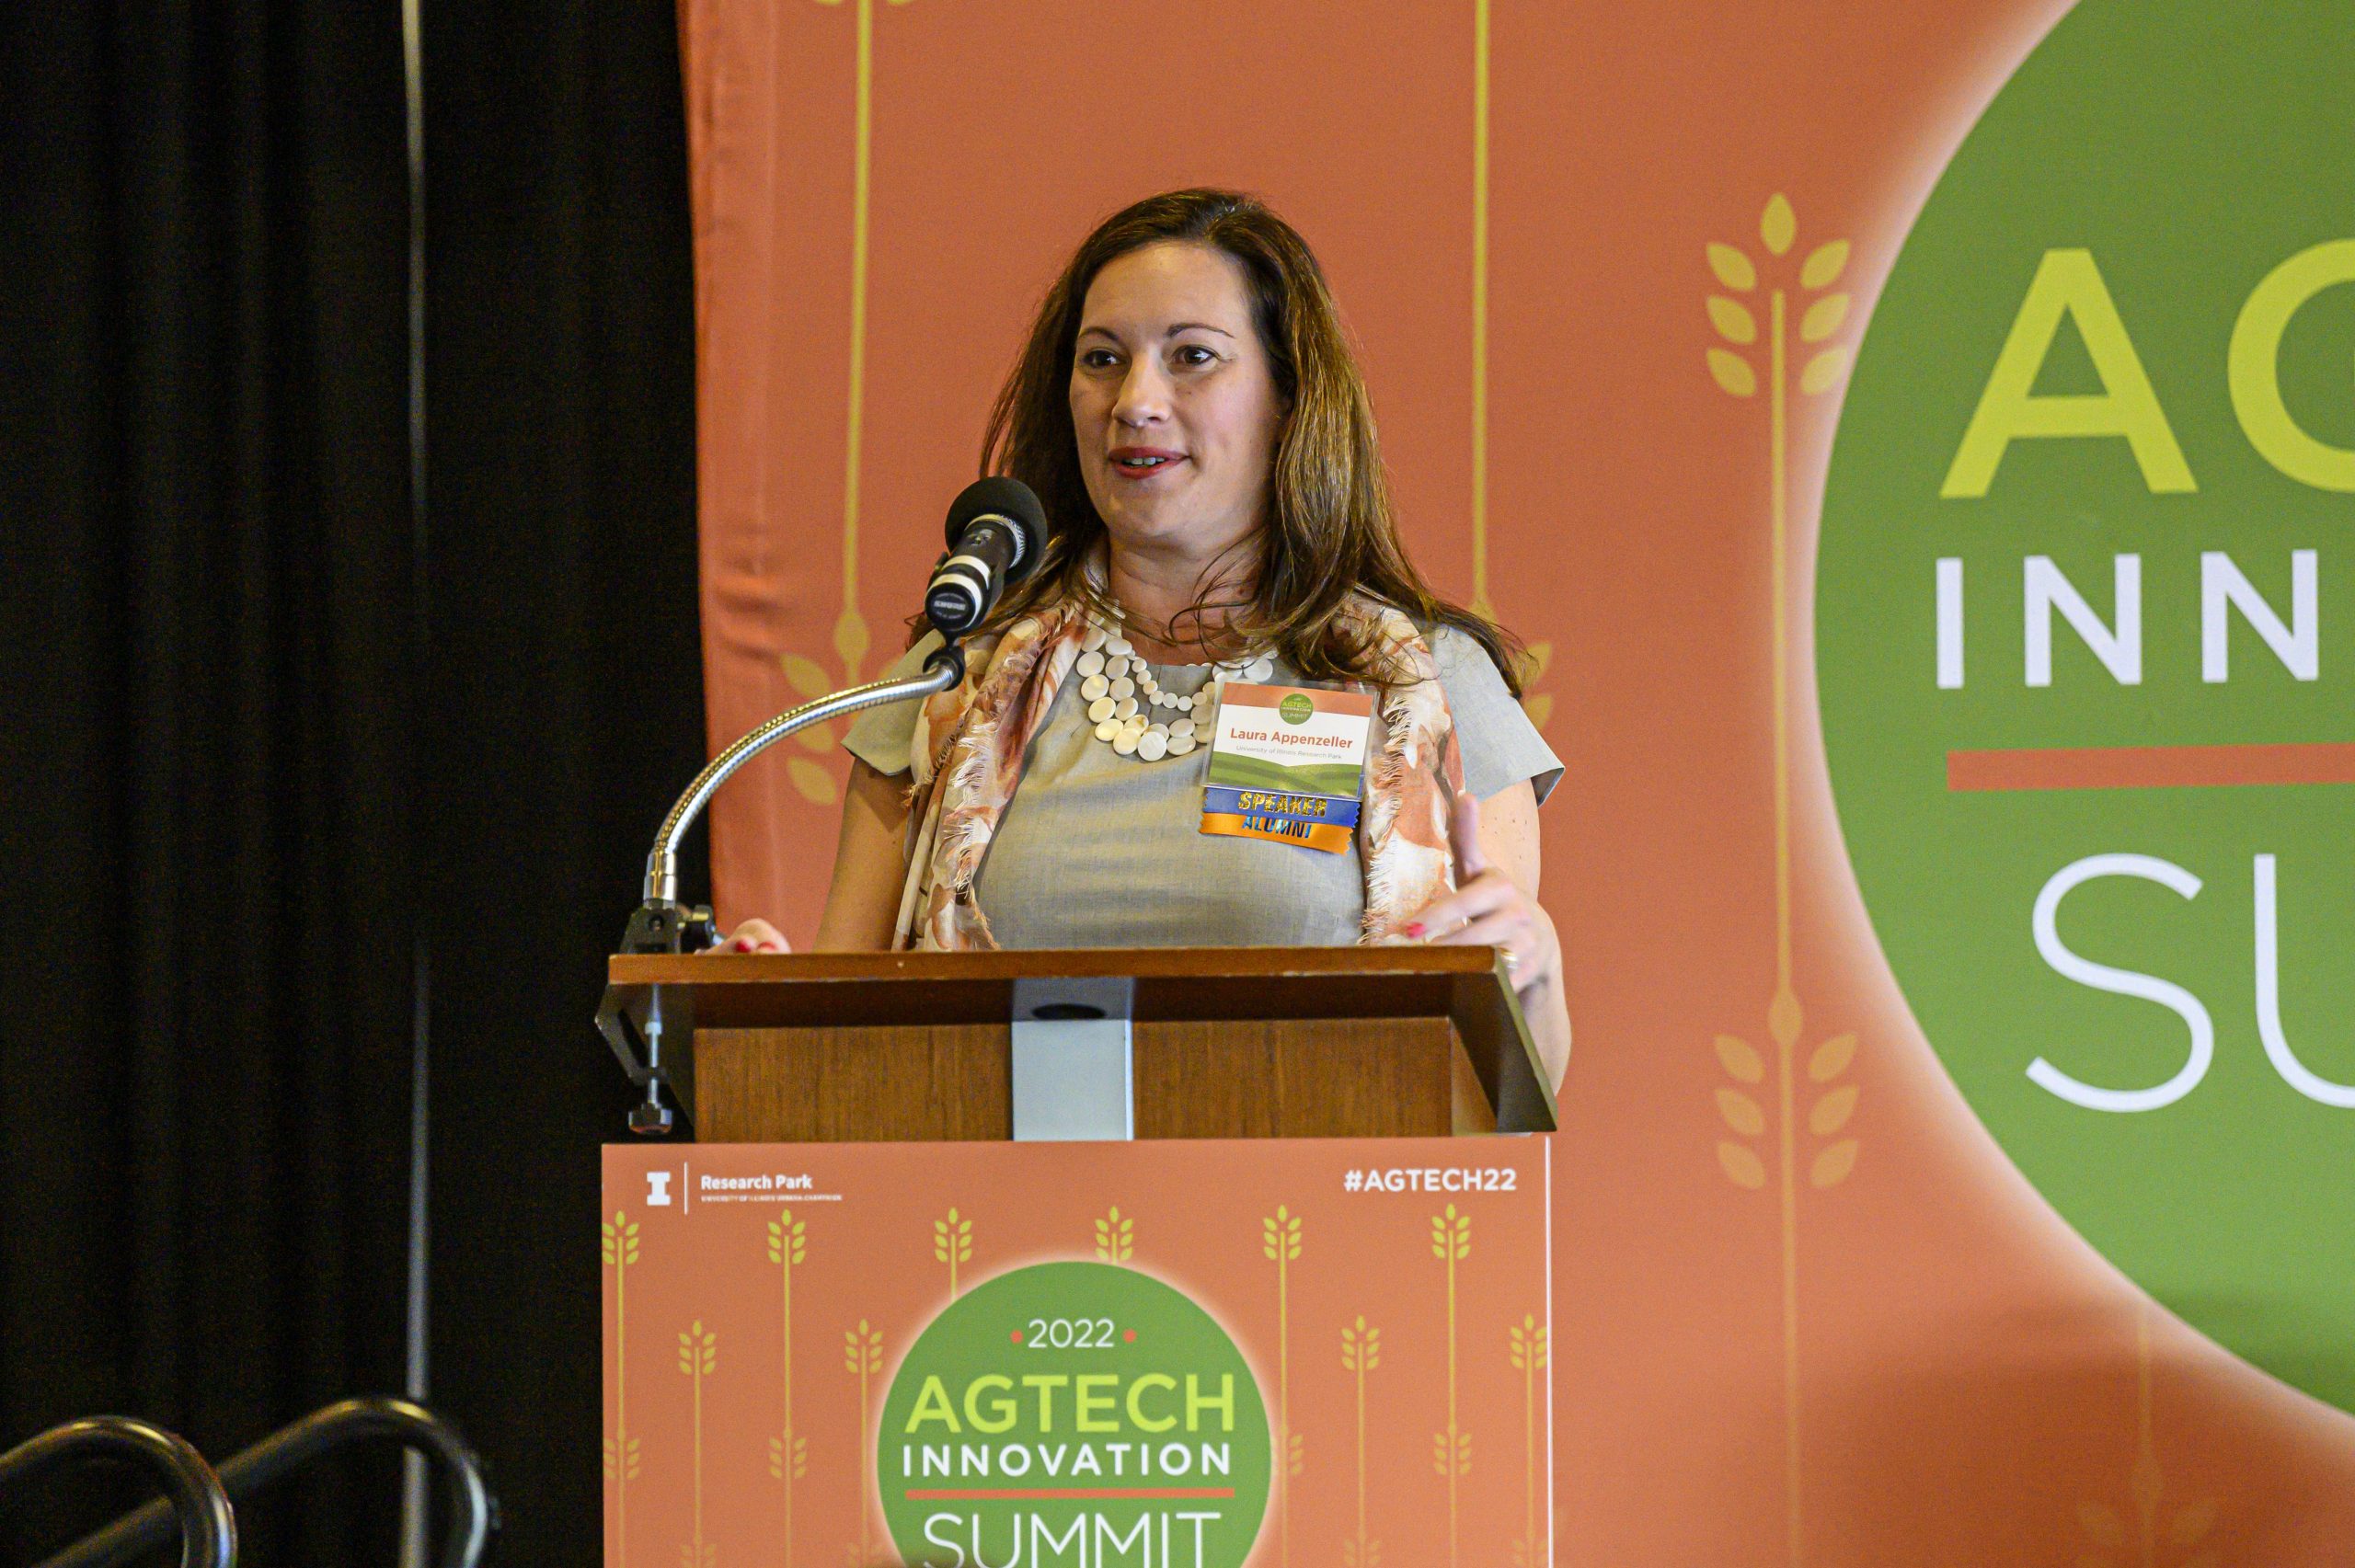 Laura Appenzeller speaking at AgTech Summit.